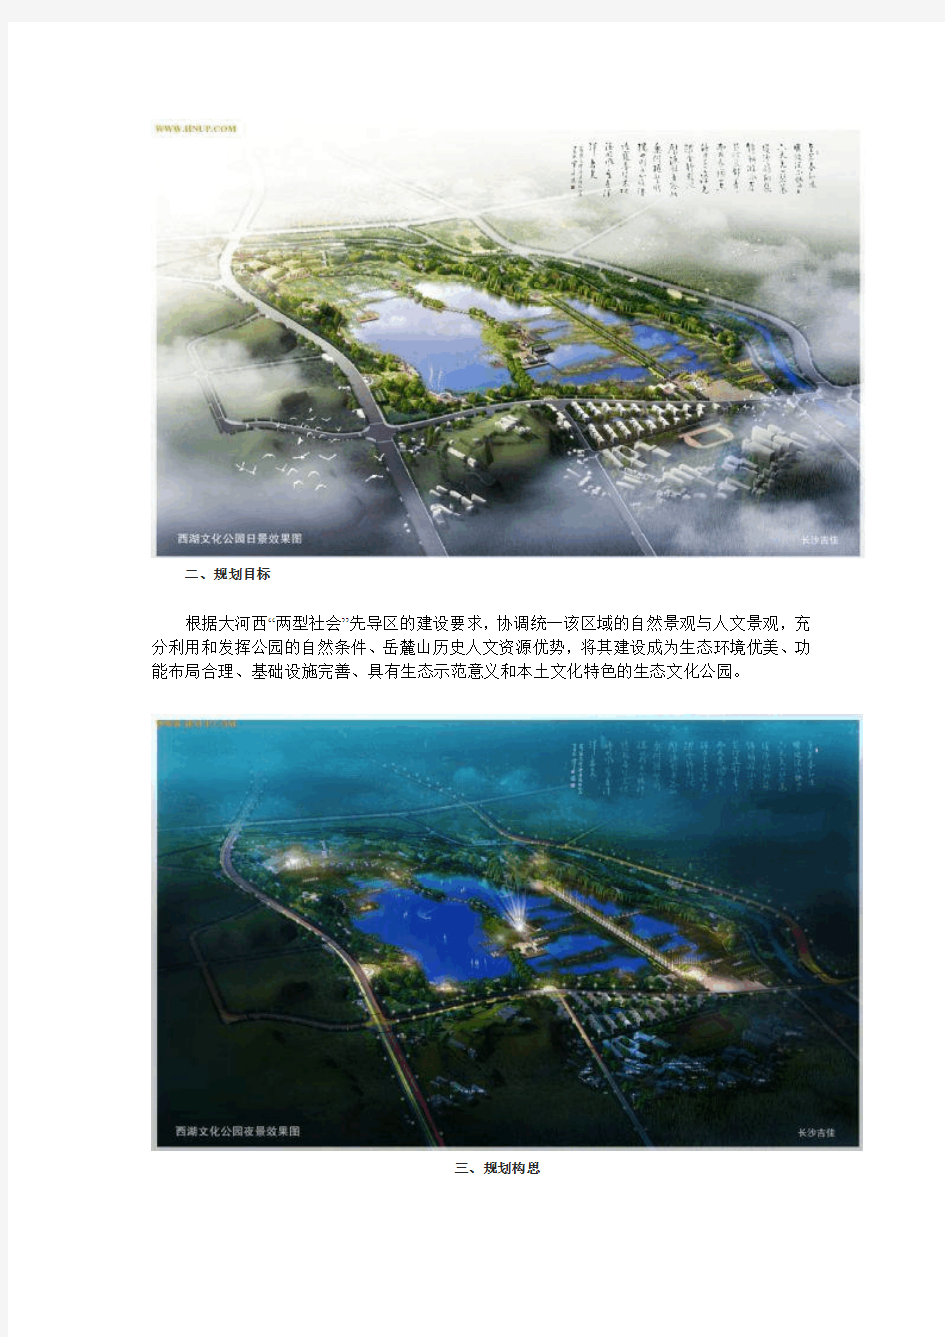 长沙西湖文化公园总体规划设计方案公示